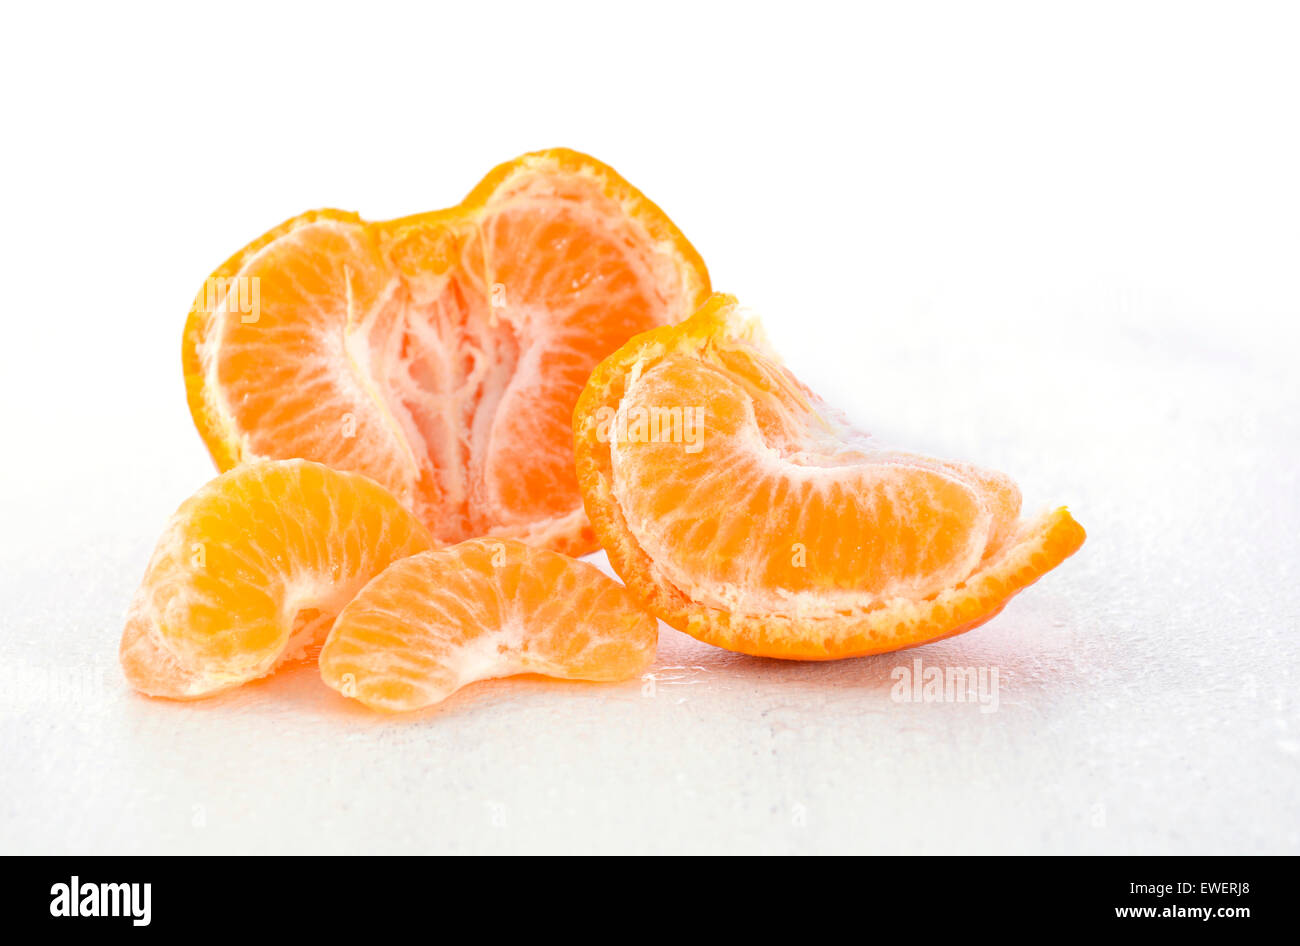 Mandarino dolce metà con segmenti su bianco rustico shabby chic tavolo. Foto Stock